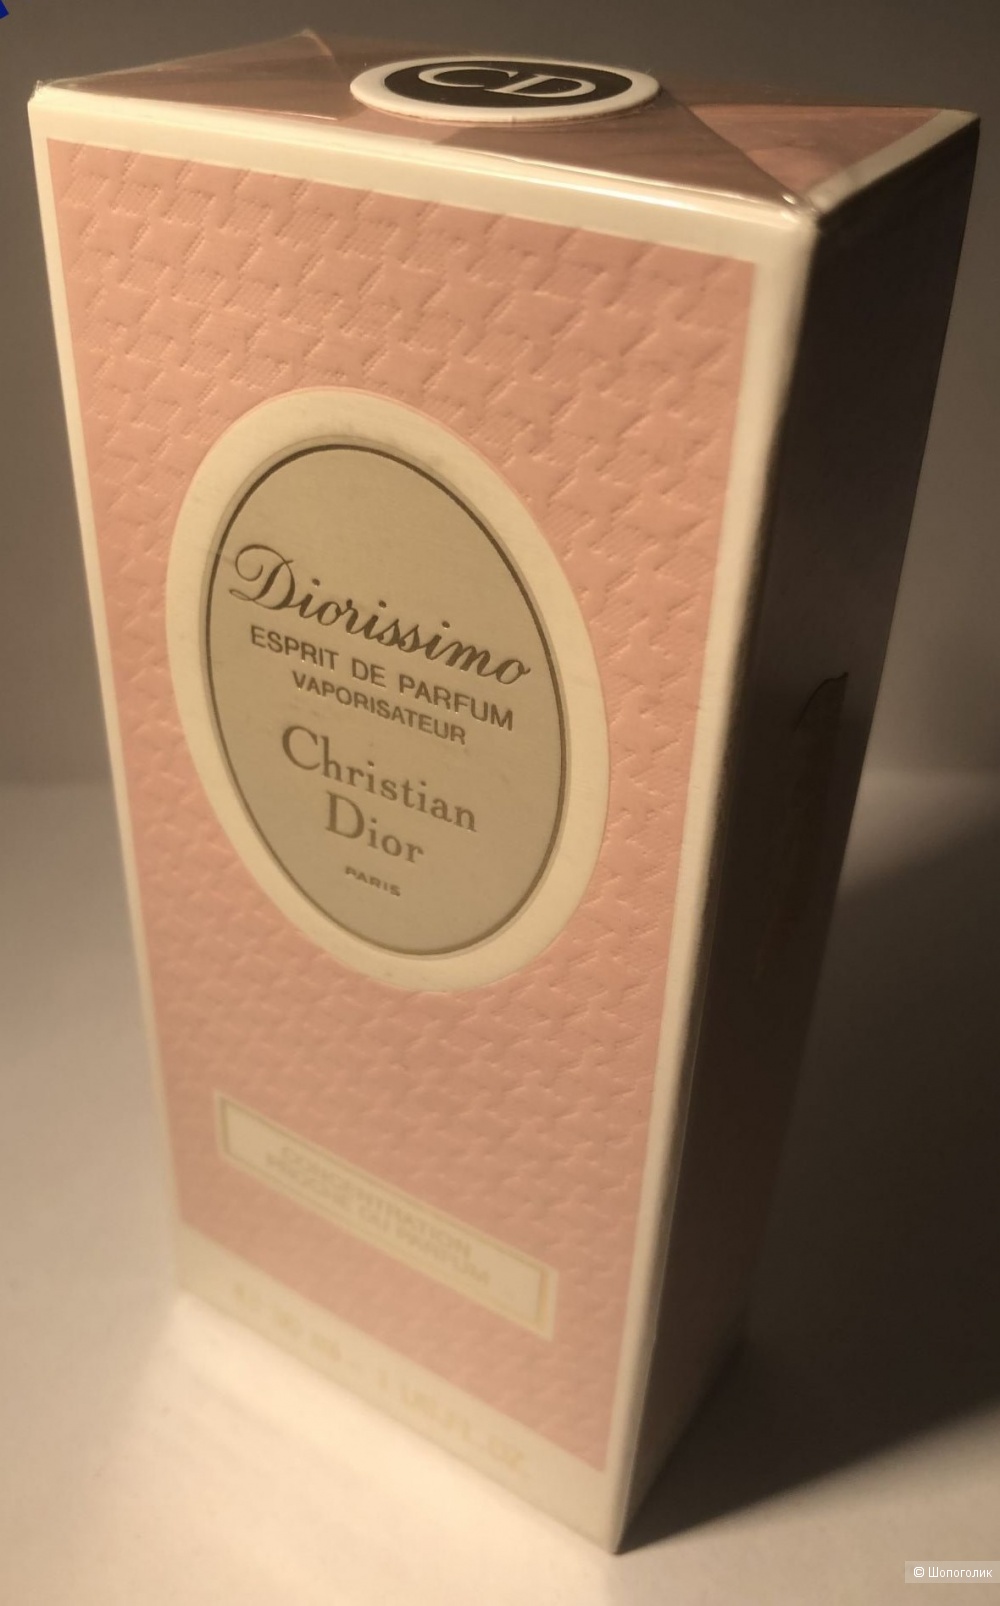 Духи Christian Dior, Diorissimo esprit de parfum,  30 мл